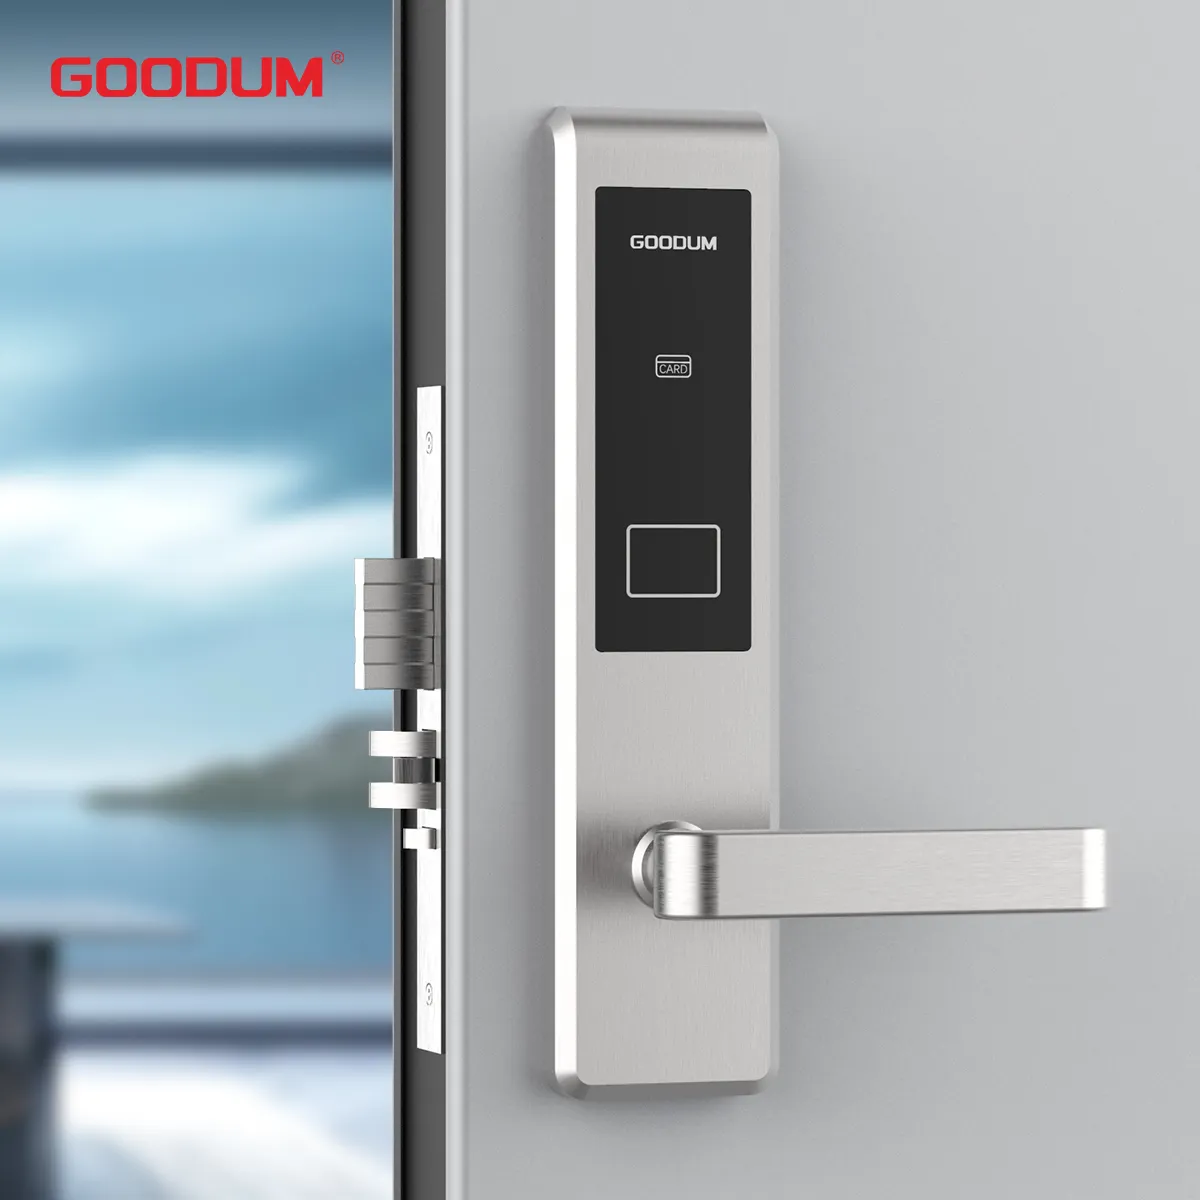 GOODUM migliore marca Smart RFID Hotel sistema di chiavi elettroniche di sicurezza porte in legno cina-Made affidabile serrature a cilindro